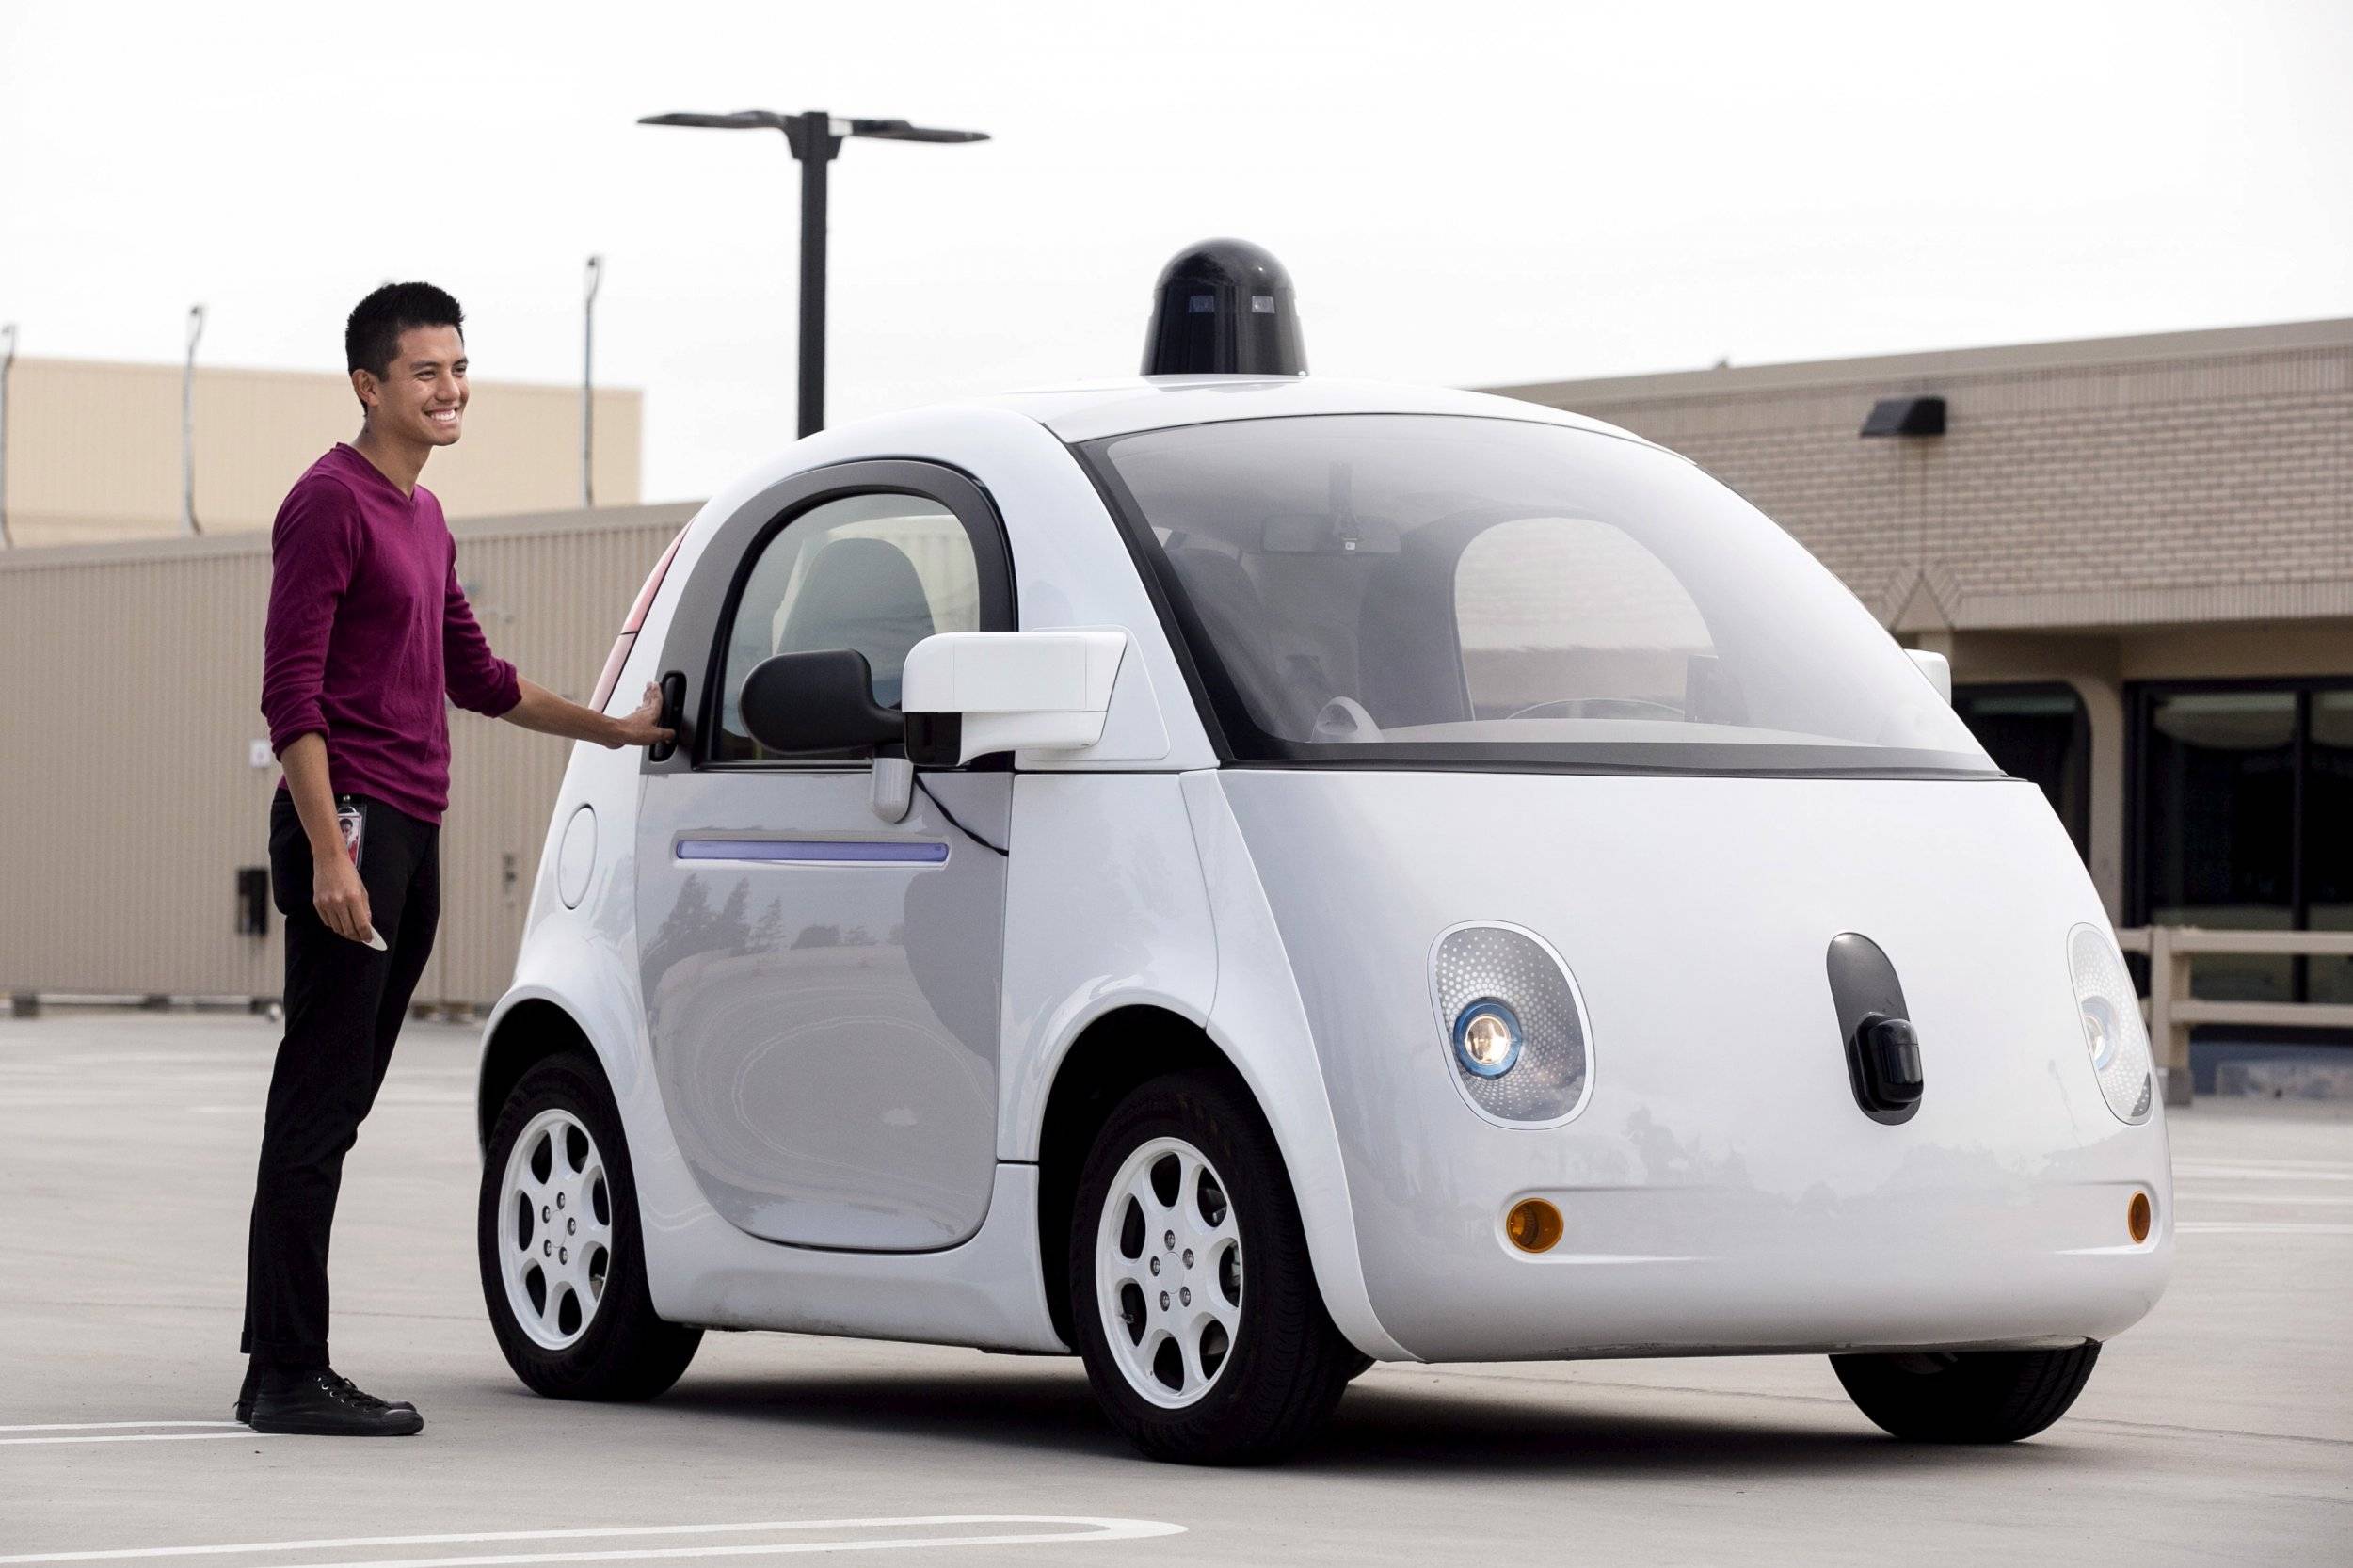 Беспилотные автомобили яндекс и google: какой лучше?